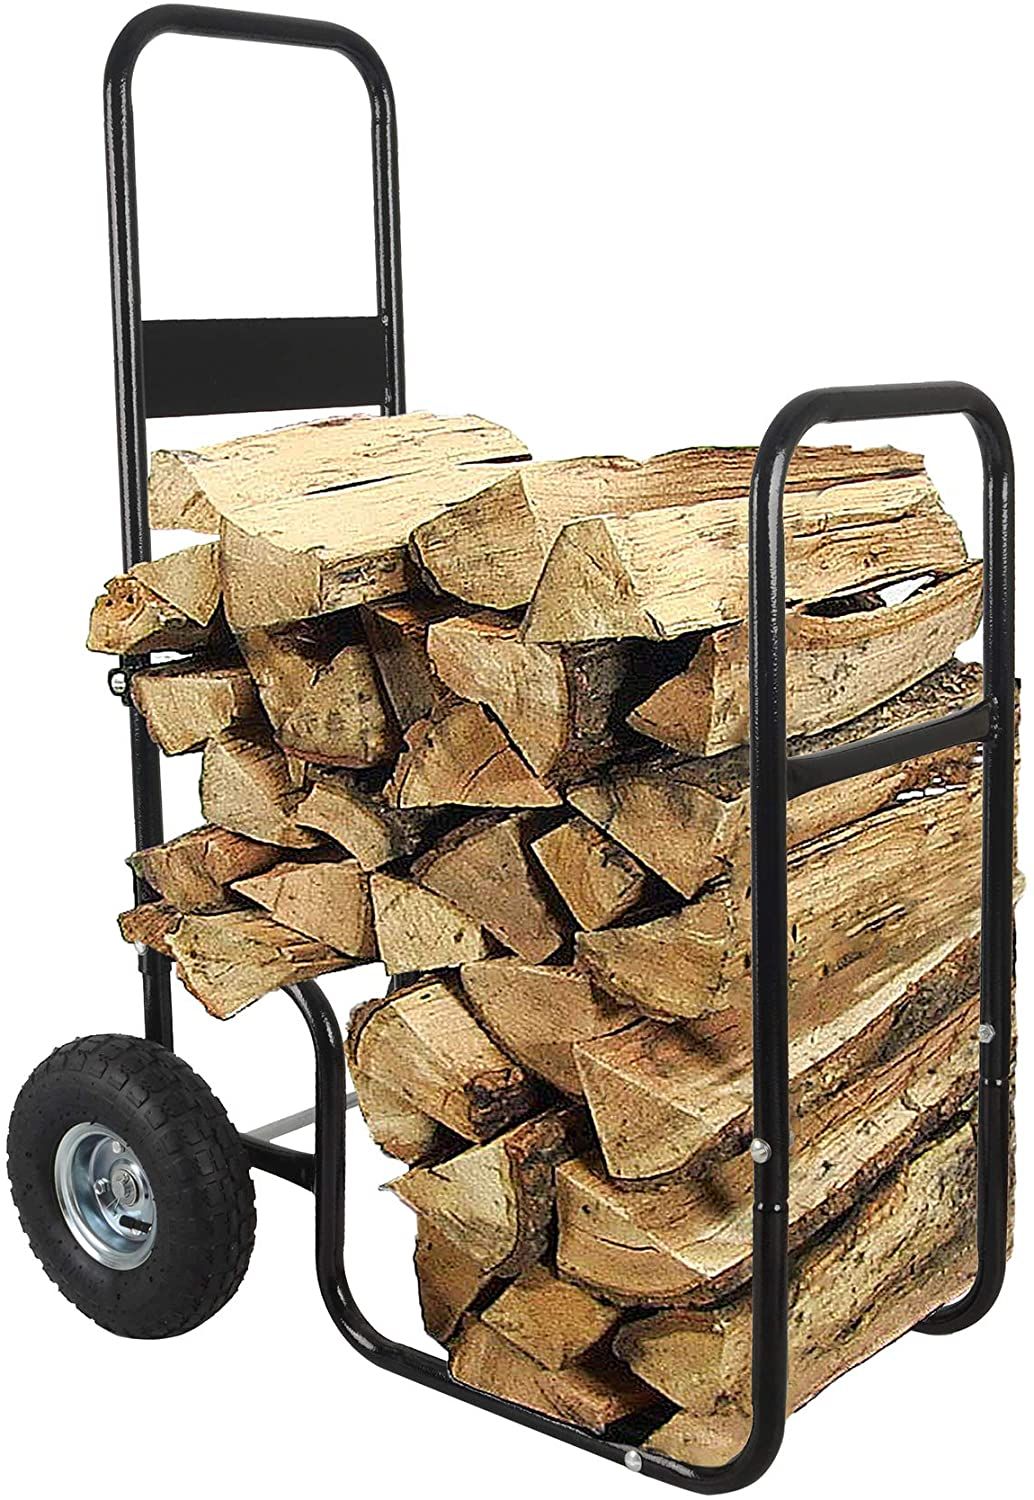 LEADALLWAY Firewood Cart